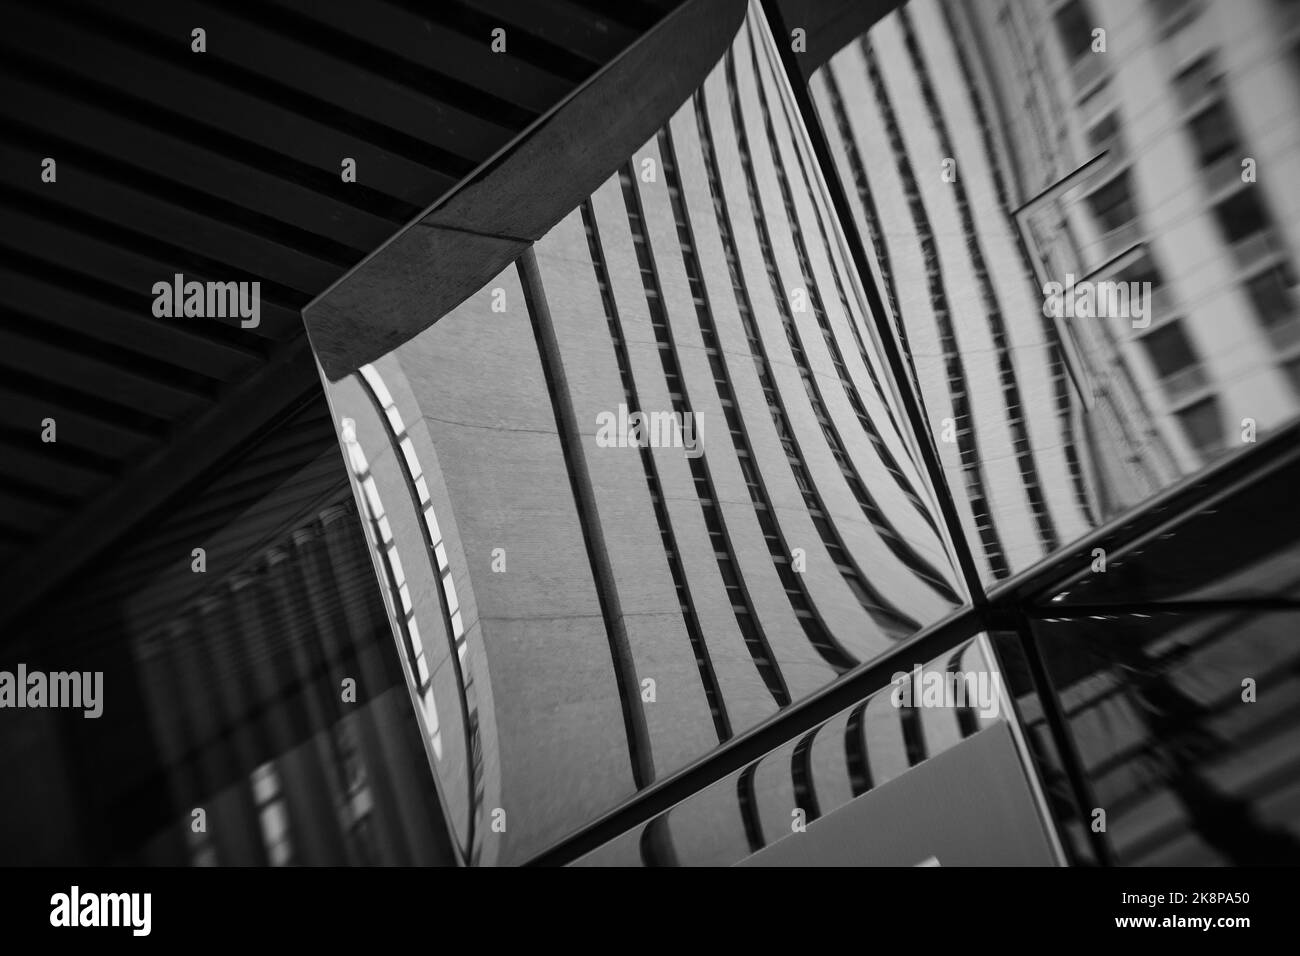 Schwarz-weiß Lensbaby abstrakte Bilder der modernen Chicagoer Architektur für die Verwendung als Metapher oder Hintergrund. Stockfoto